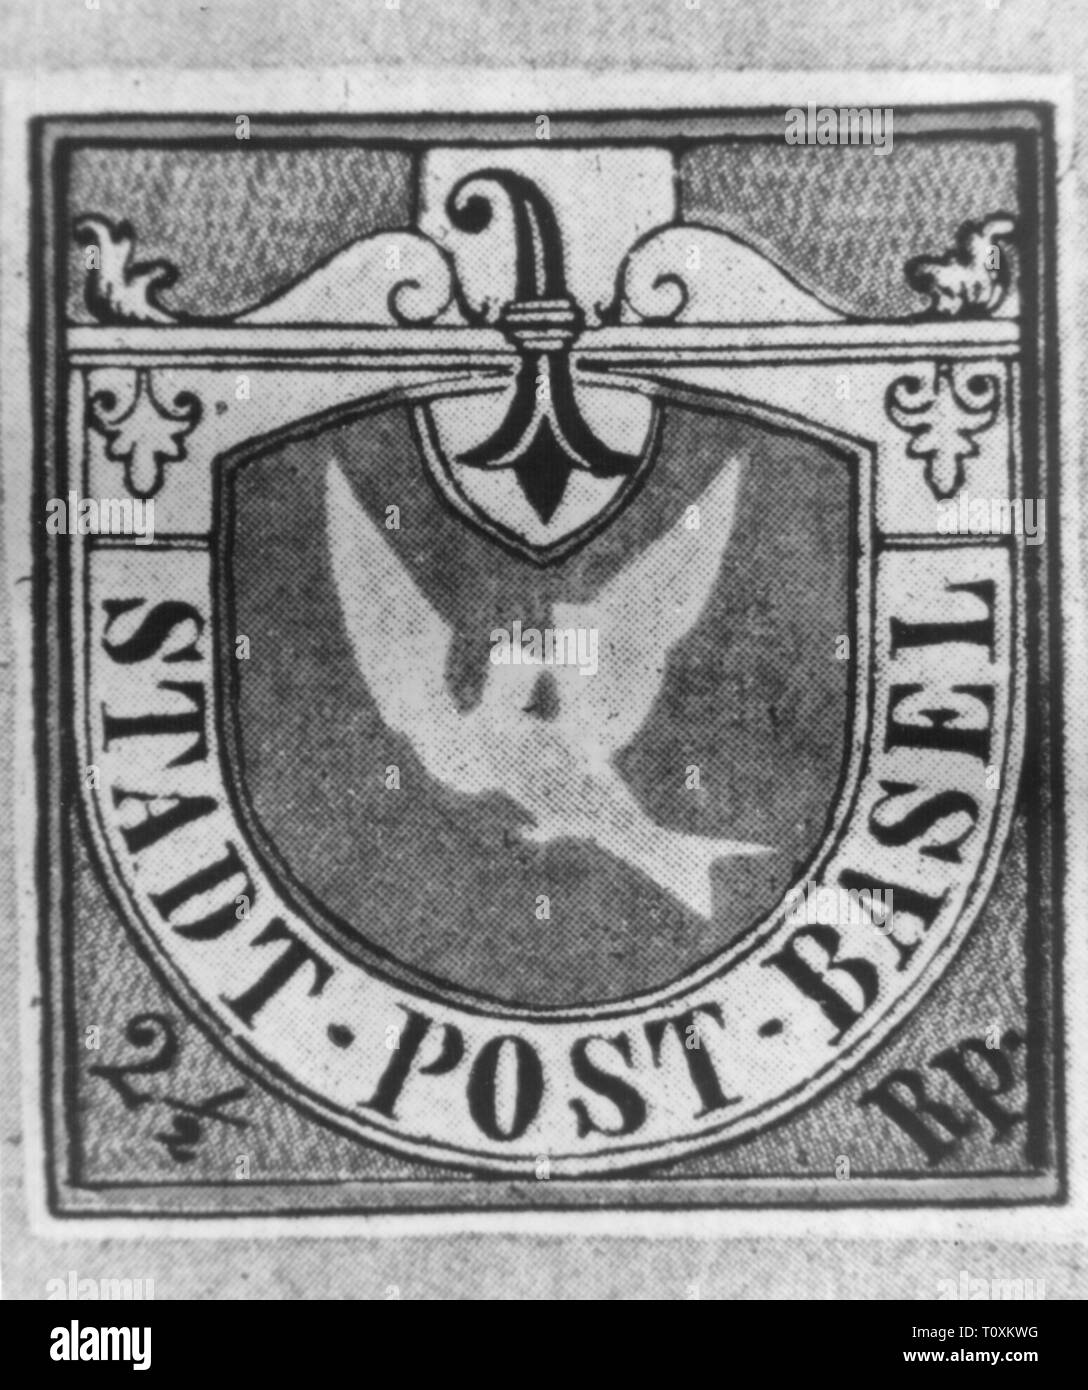 La poste, timbres, Suisse, 2 1/2 rappen timbre-poste, Colombe de Bâle, Bâle,  de poste date de publication : le 1.7.1845, Additional-Rights  Clearance-Info-Not-Available Photo Stock - Alamy